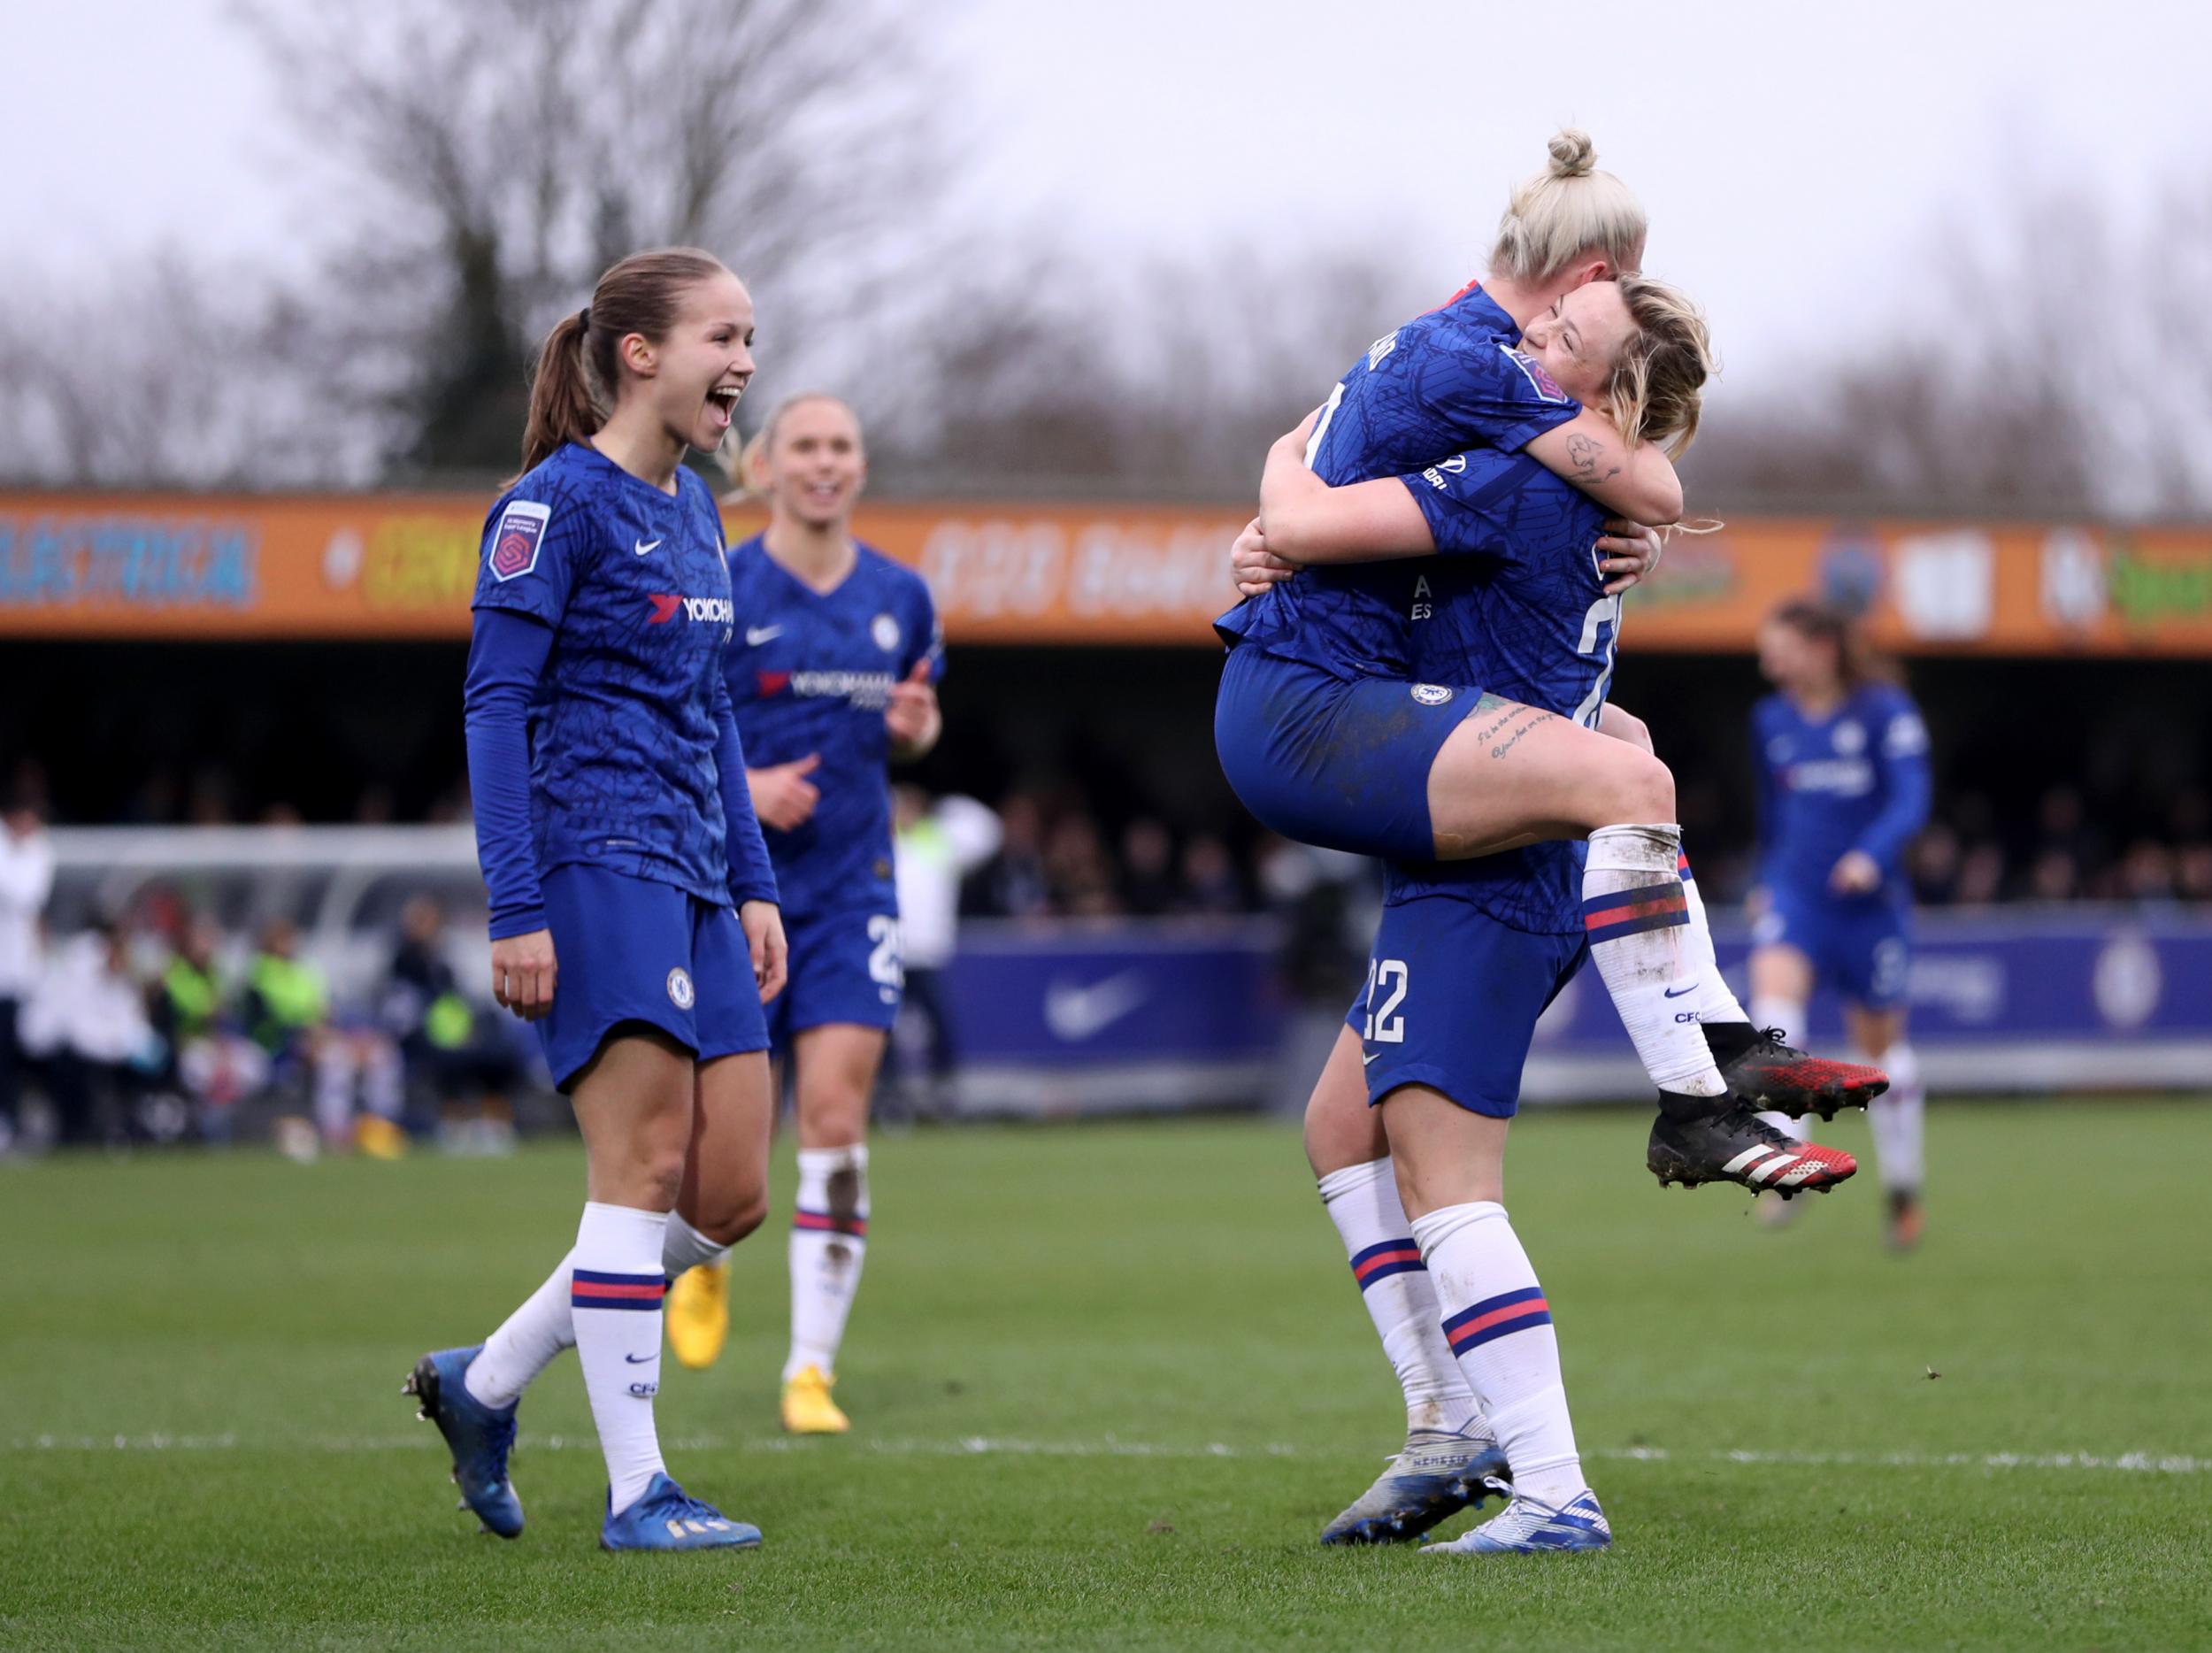 Chelsea have won the 2019/20 Women's Super League